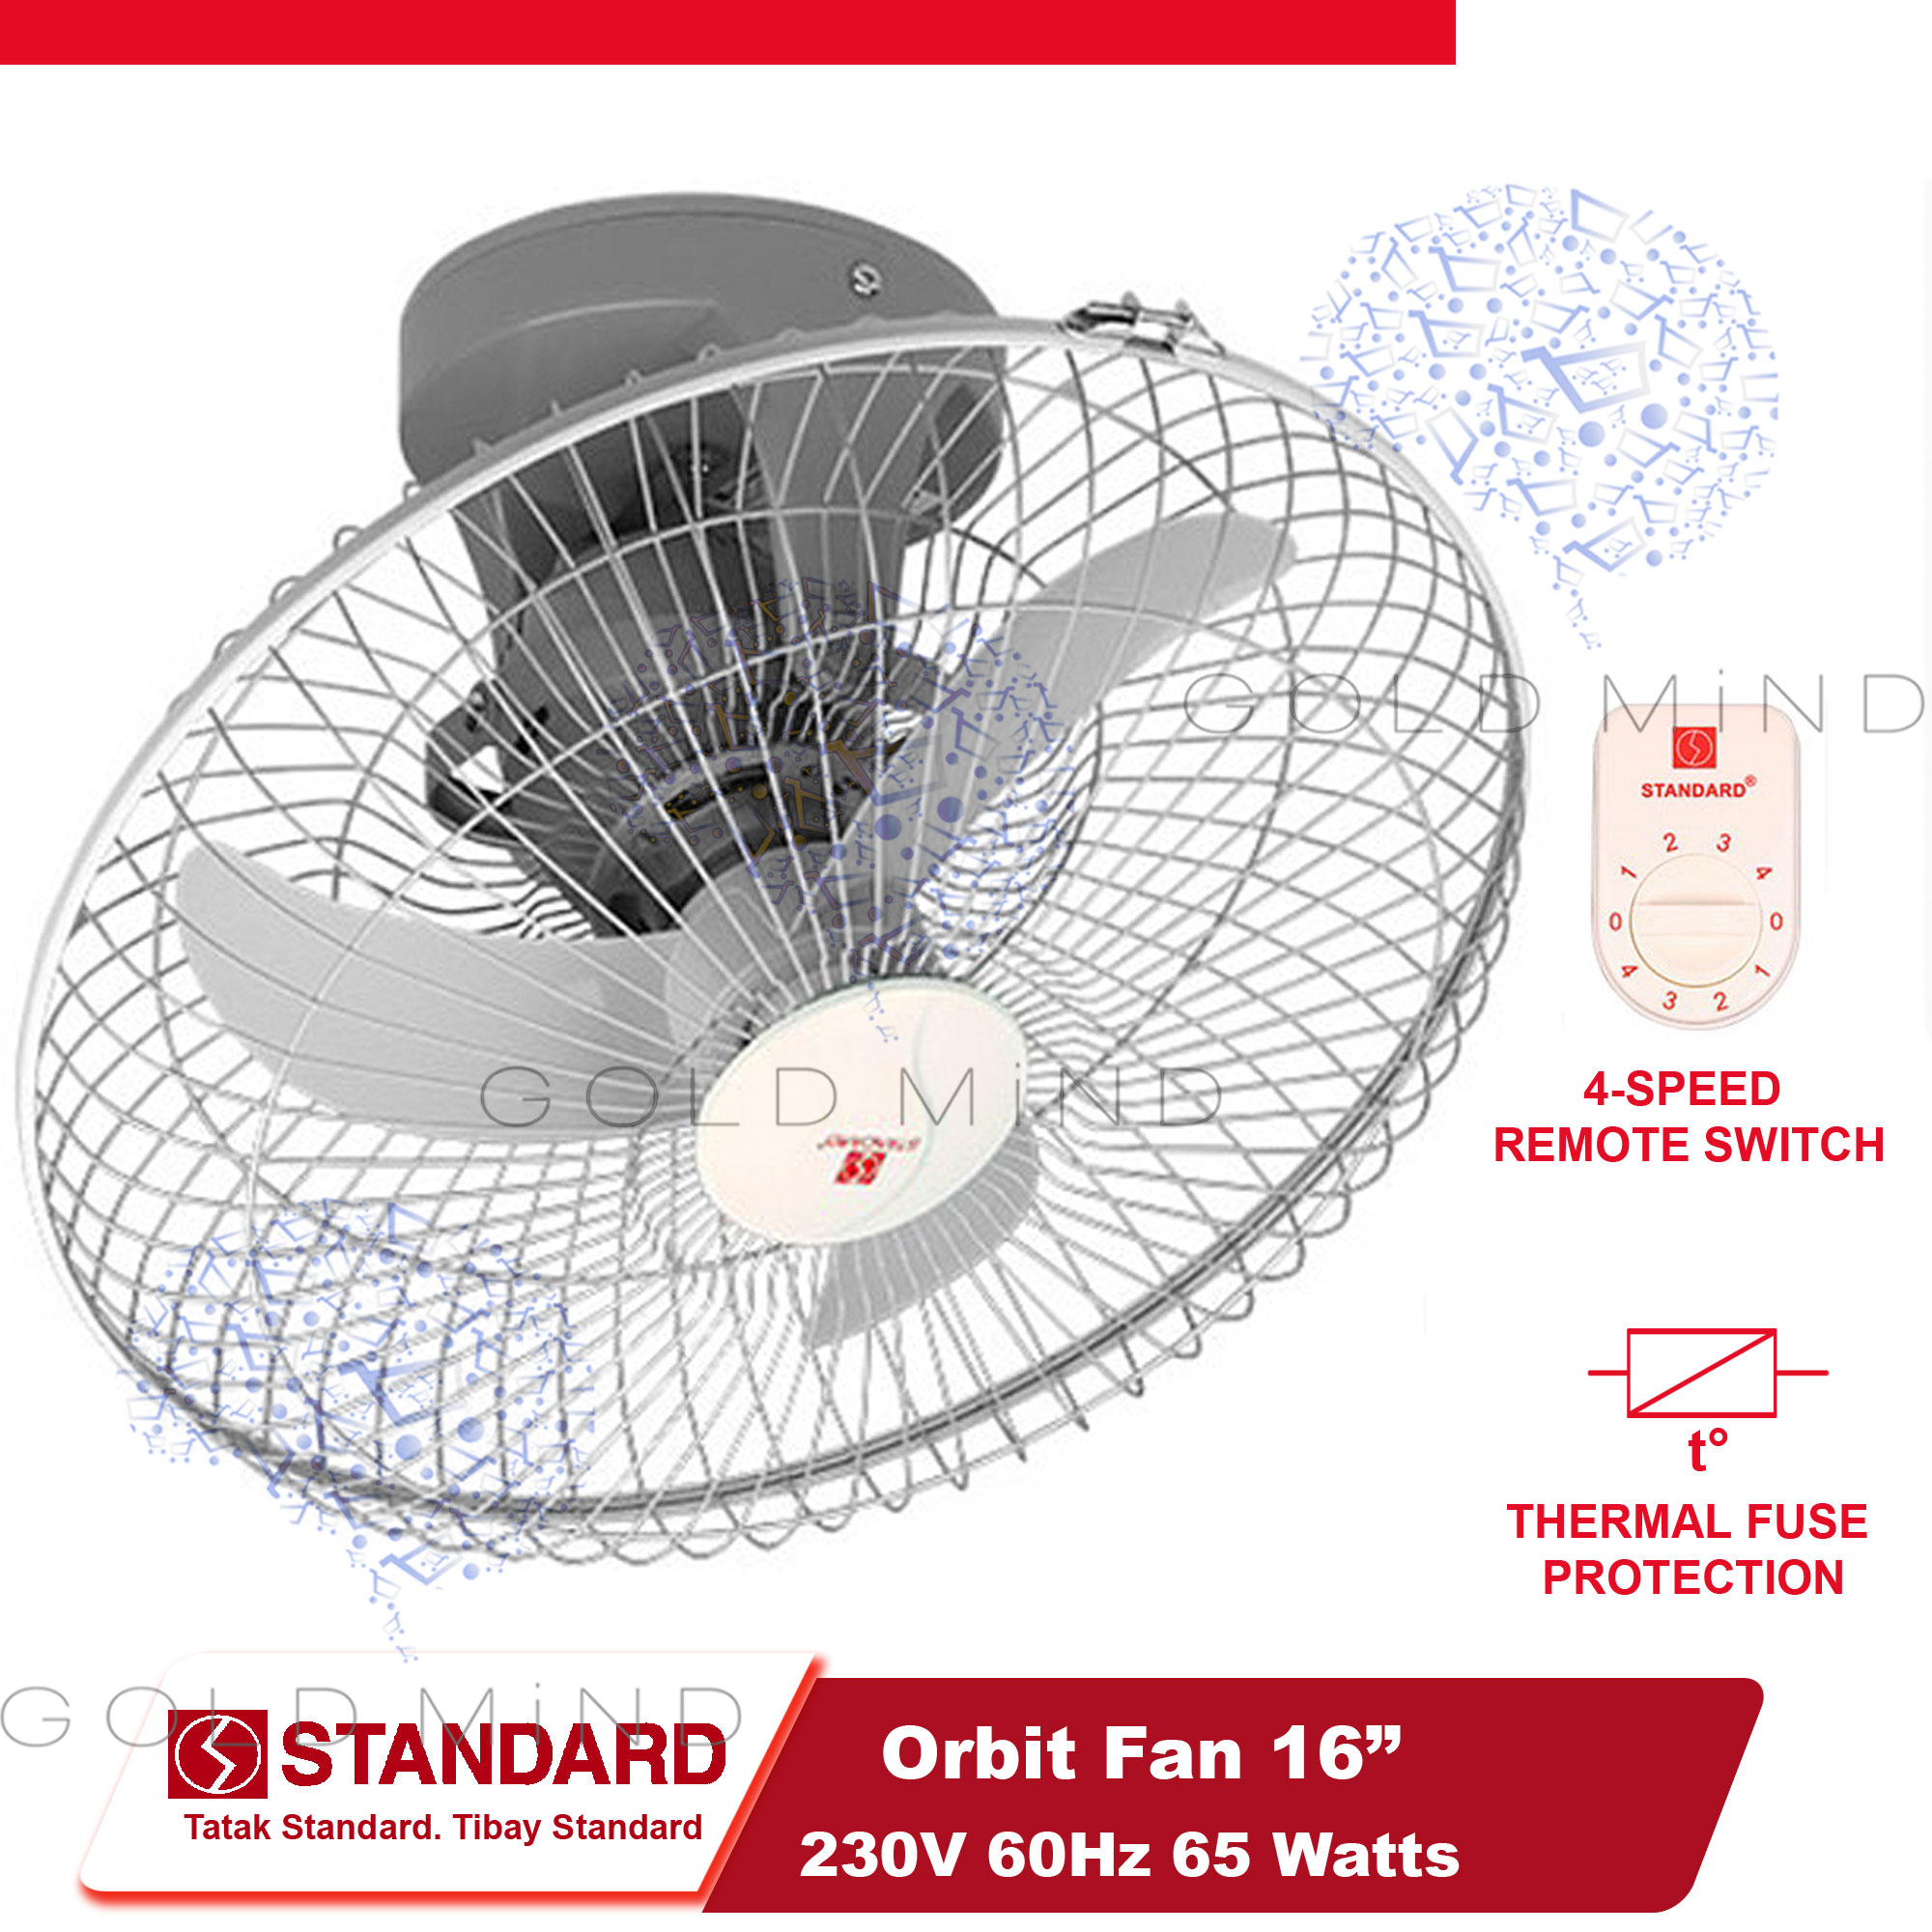 Standard Electric Fan Orbit Ceiling